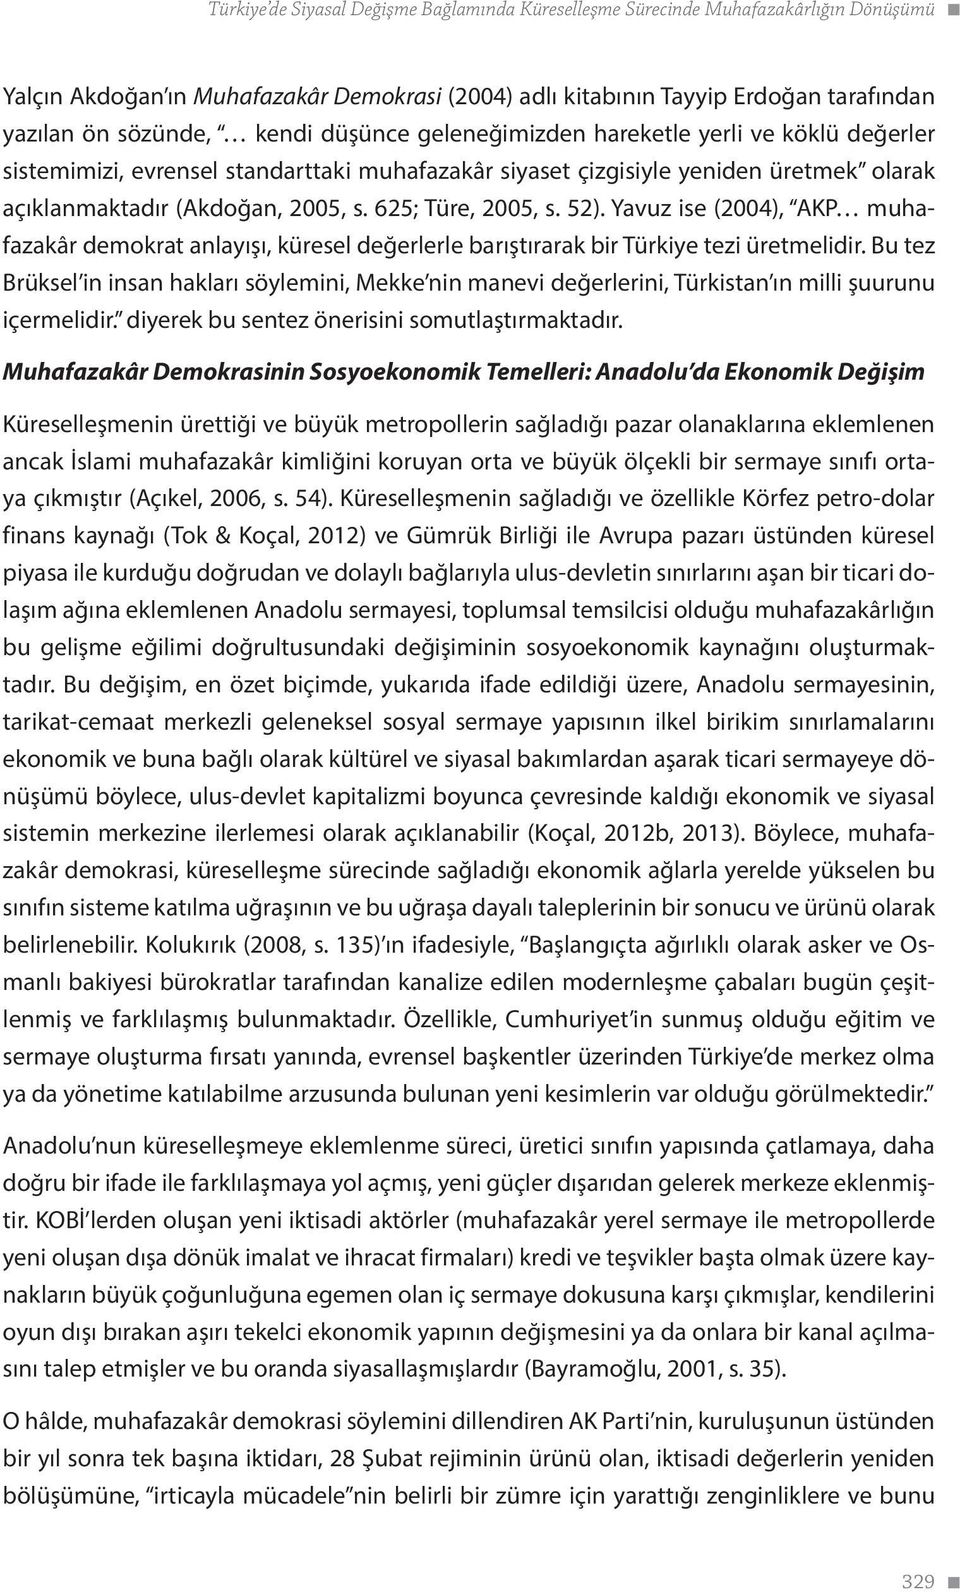 625; Türe, 2005, s. 52). Yavuz ise (2004), AKP muhafazakâr demokrat anlayışı, küresel değerlerle barıştırarak bir Türkiye tezi üretmelidir.